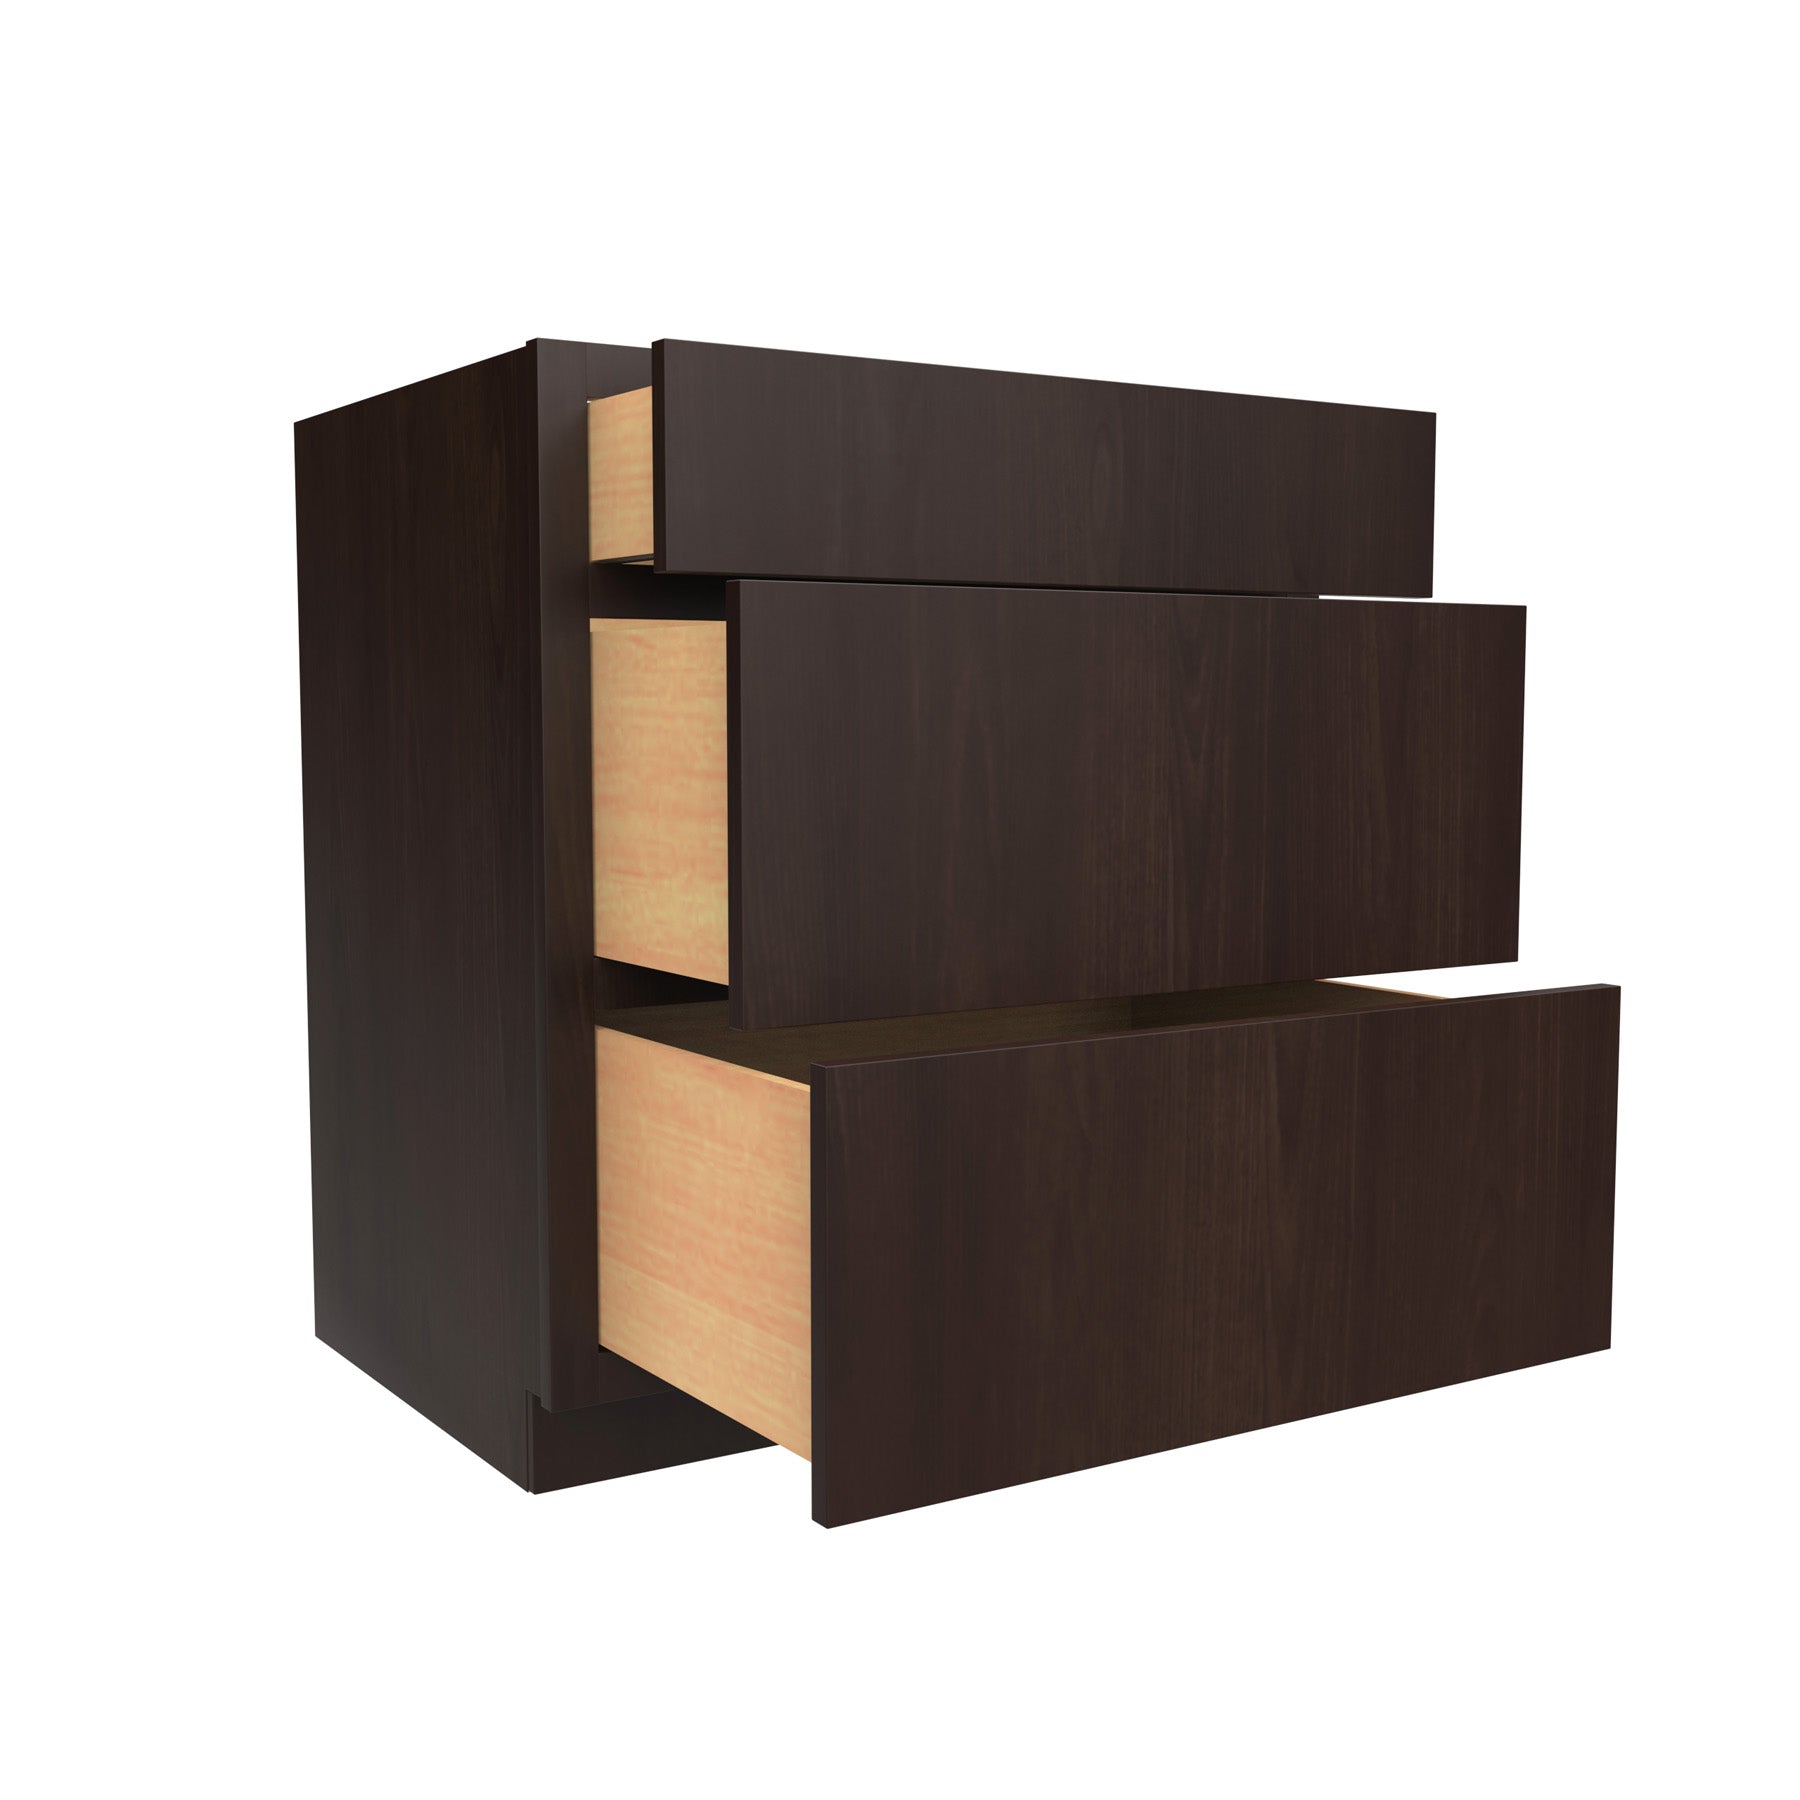 3 Drawer Base Cabinet | 30"W x 34.5"H x 24"D